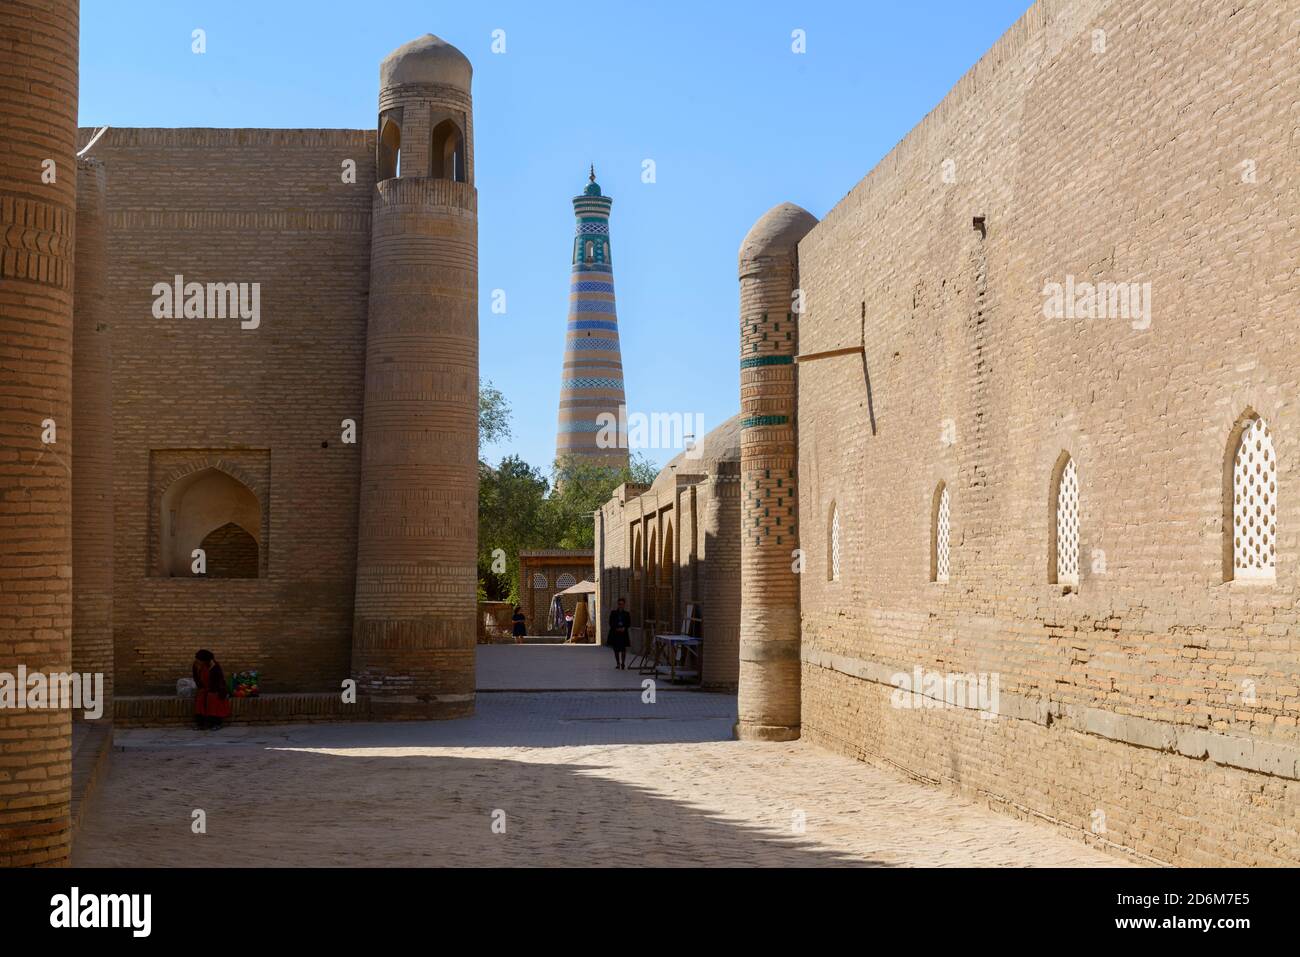 Street in the old town of Khiva, Uzbekistan. Stock Photo